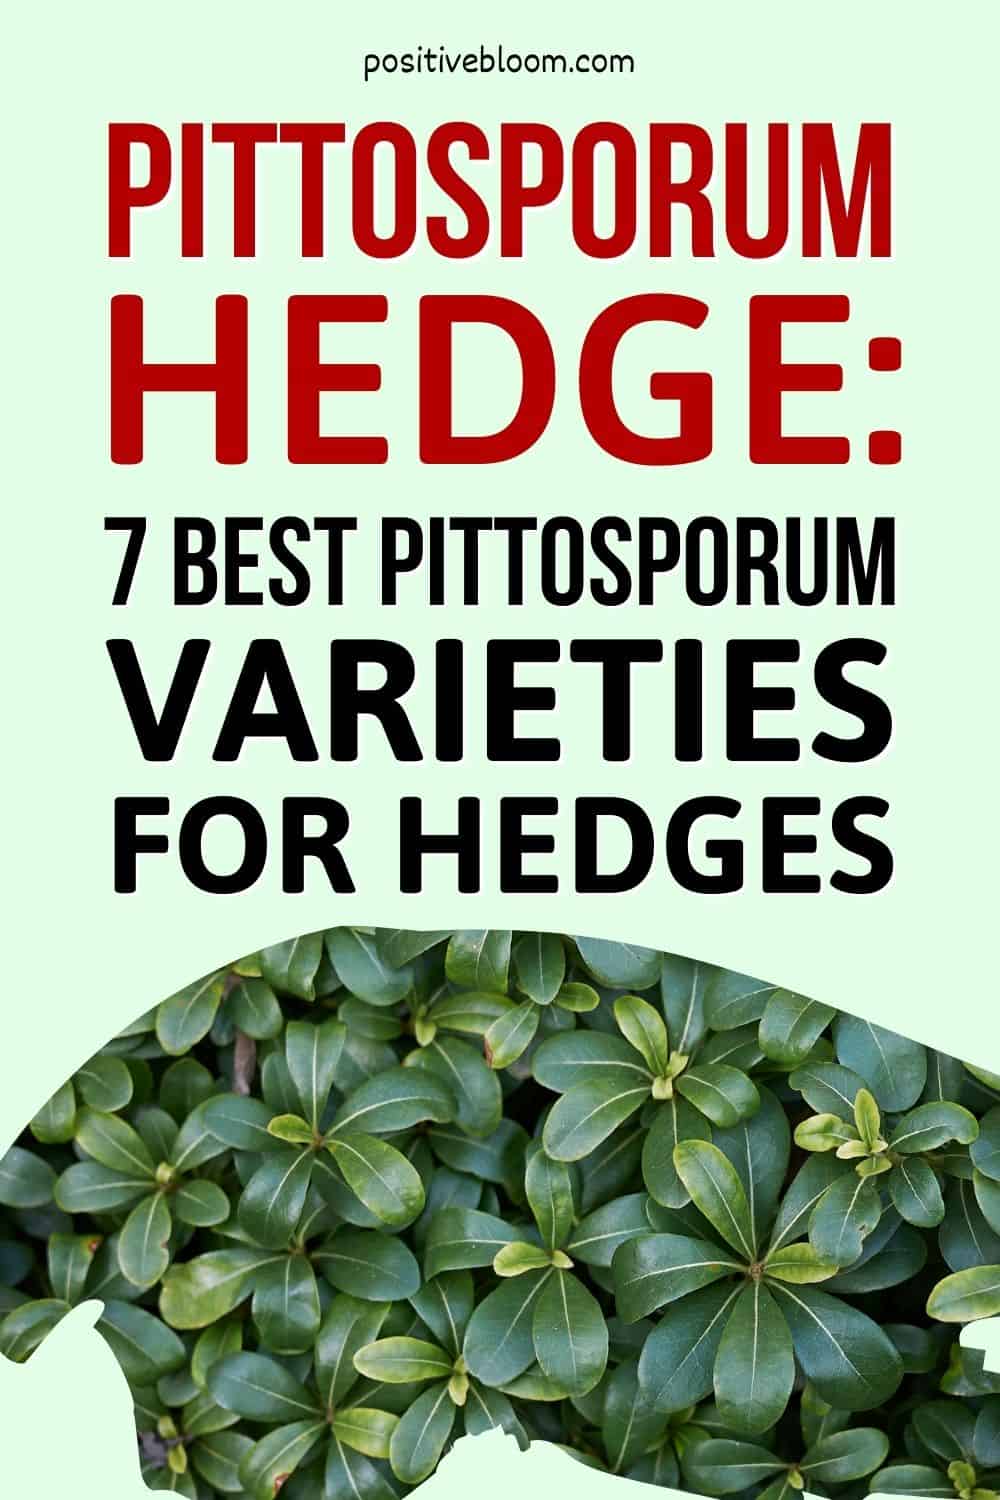 Pittosporum Hedge 7 Best Pittosporum Varieties For Hedges Pinterest